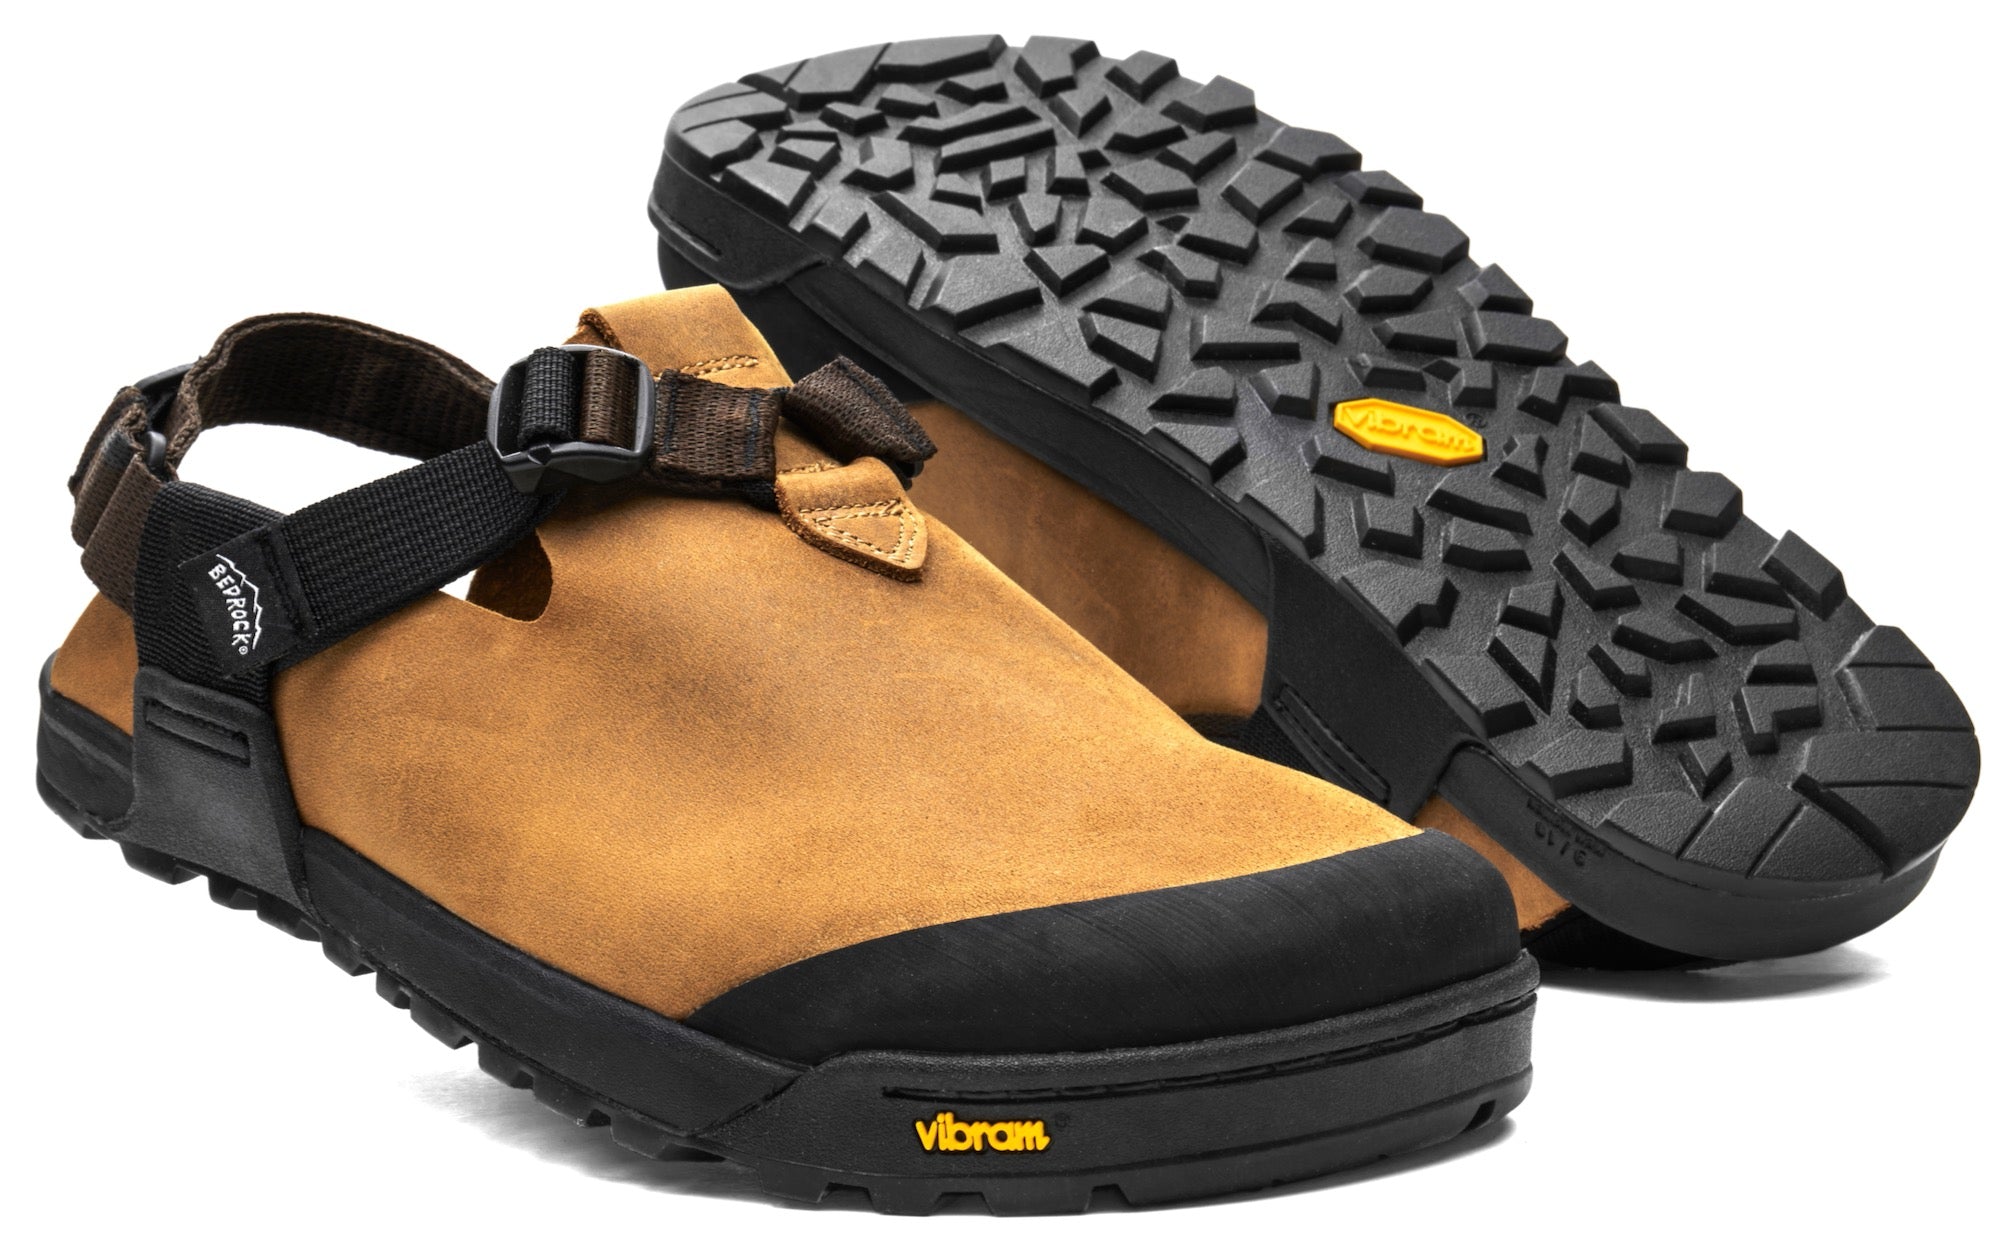 Bedrock Sandals®: Footwear Built to your Outdoor